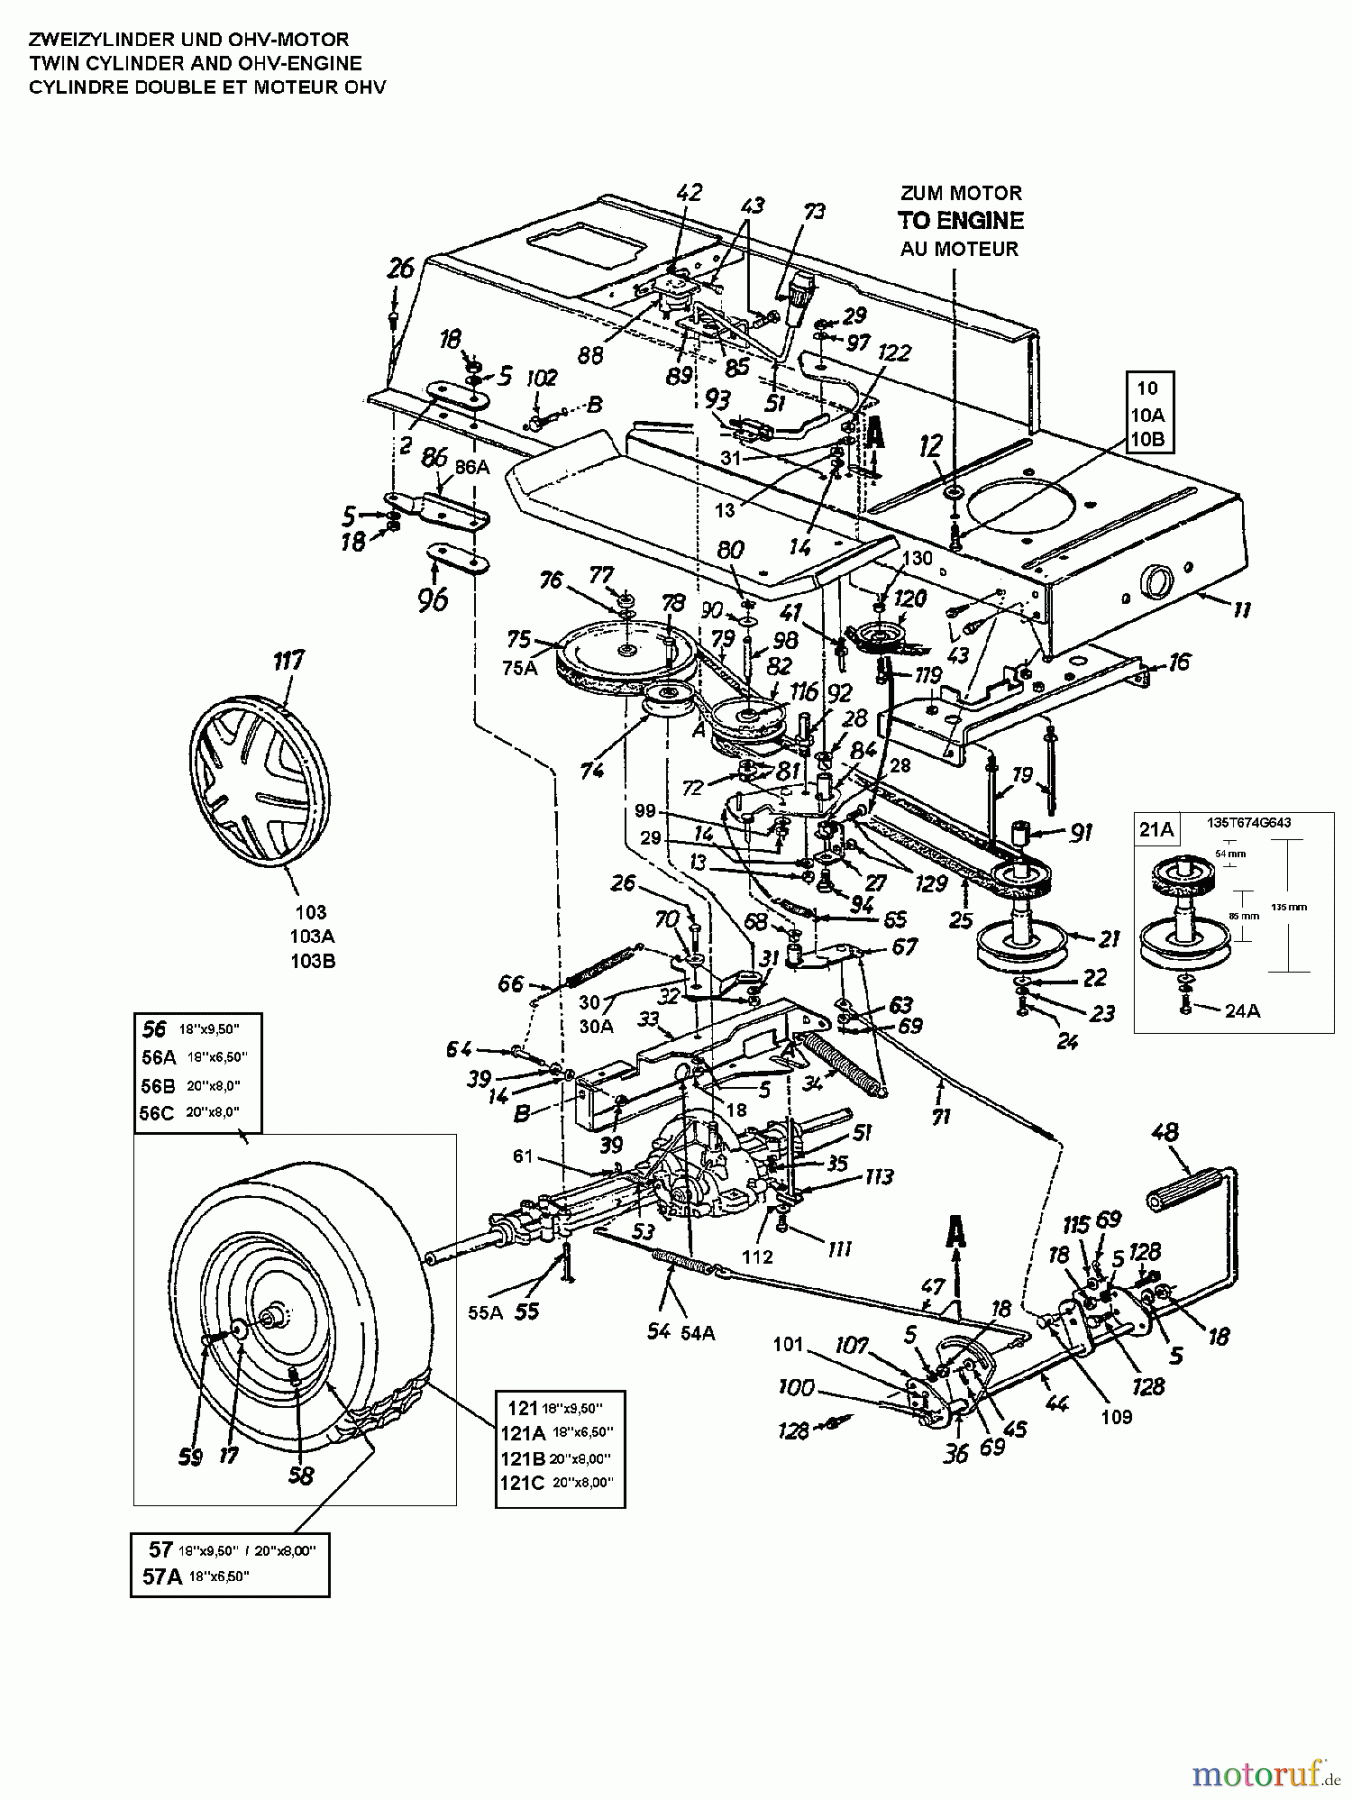  Brill Rasentraktoren 76/13 135N677C629  (1995) Fahrantrieb, Motorkeilriemenscheibe, Pedal, Räder hinten